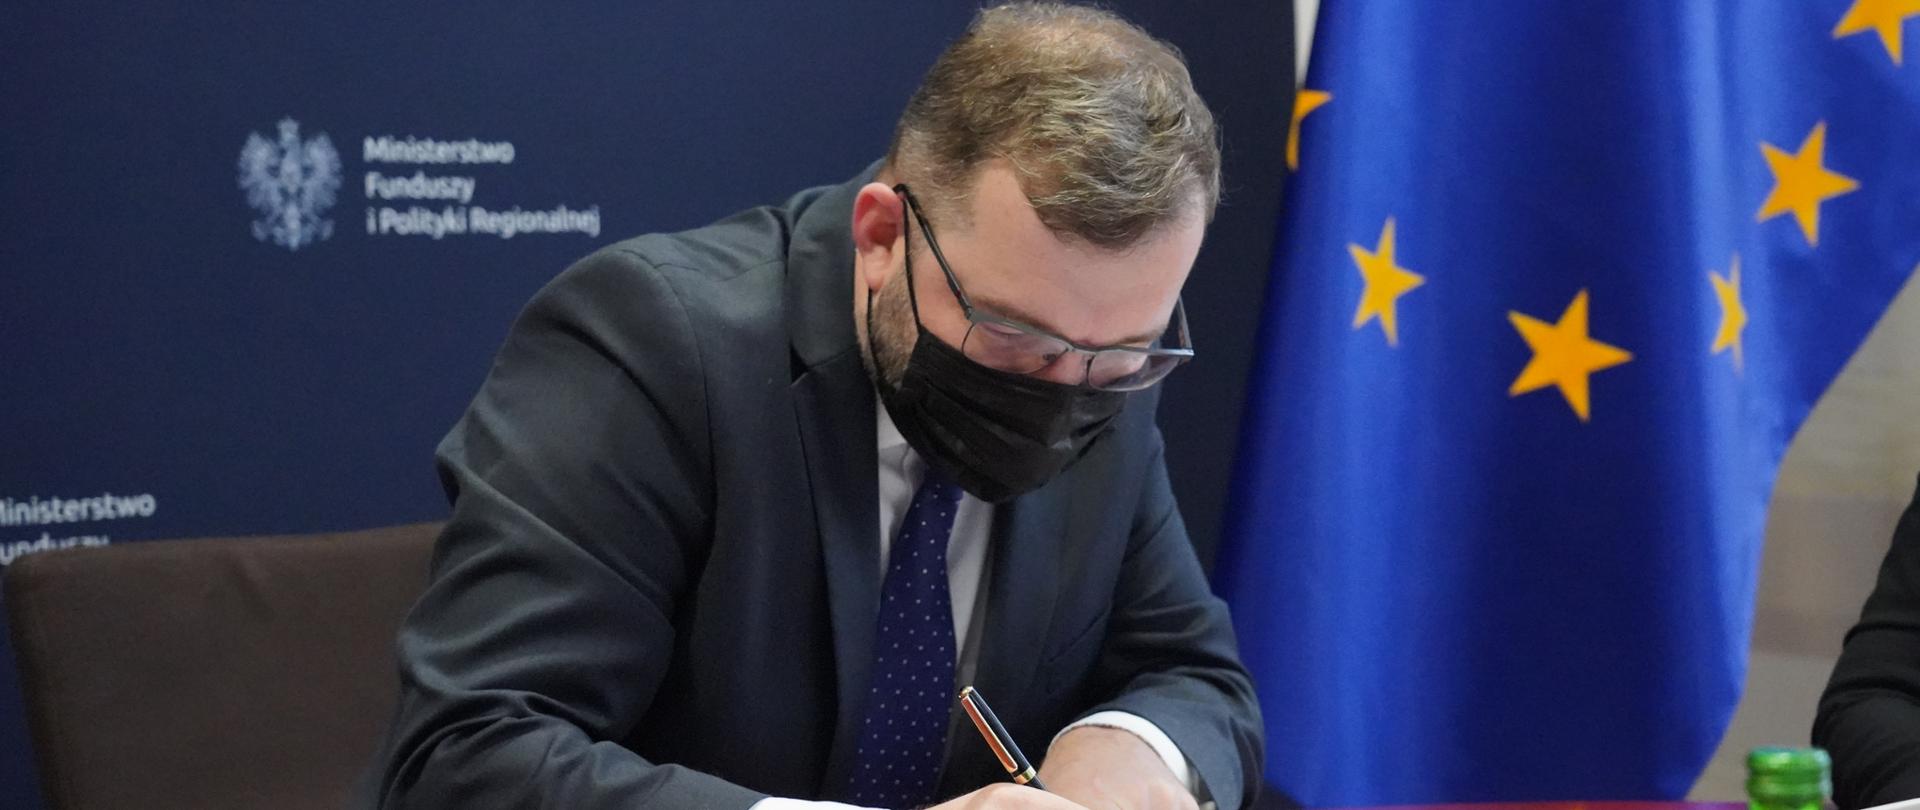 Minister Grzegorz Puda podpisuje dokument, w tle ścianka z logo Ministerstwa funduszy i polityki regionalnej oraz flaga Unii Europejskiej